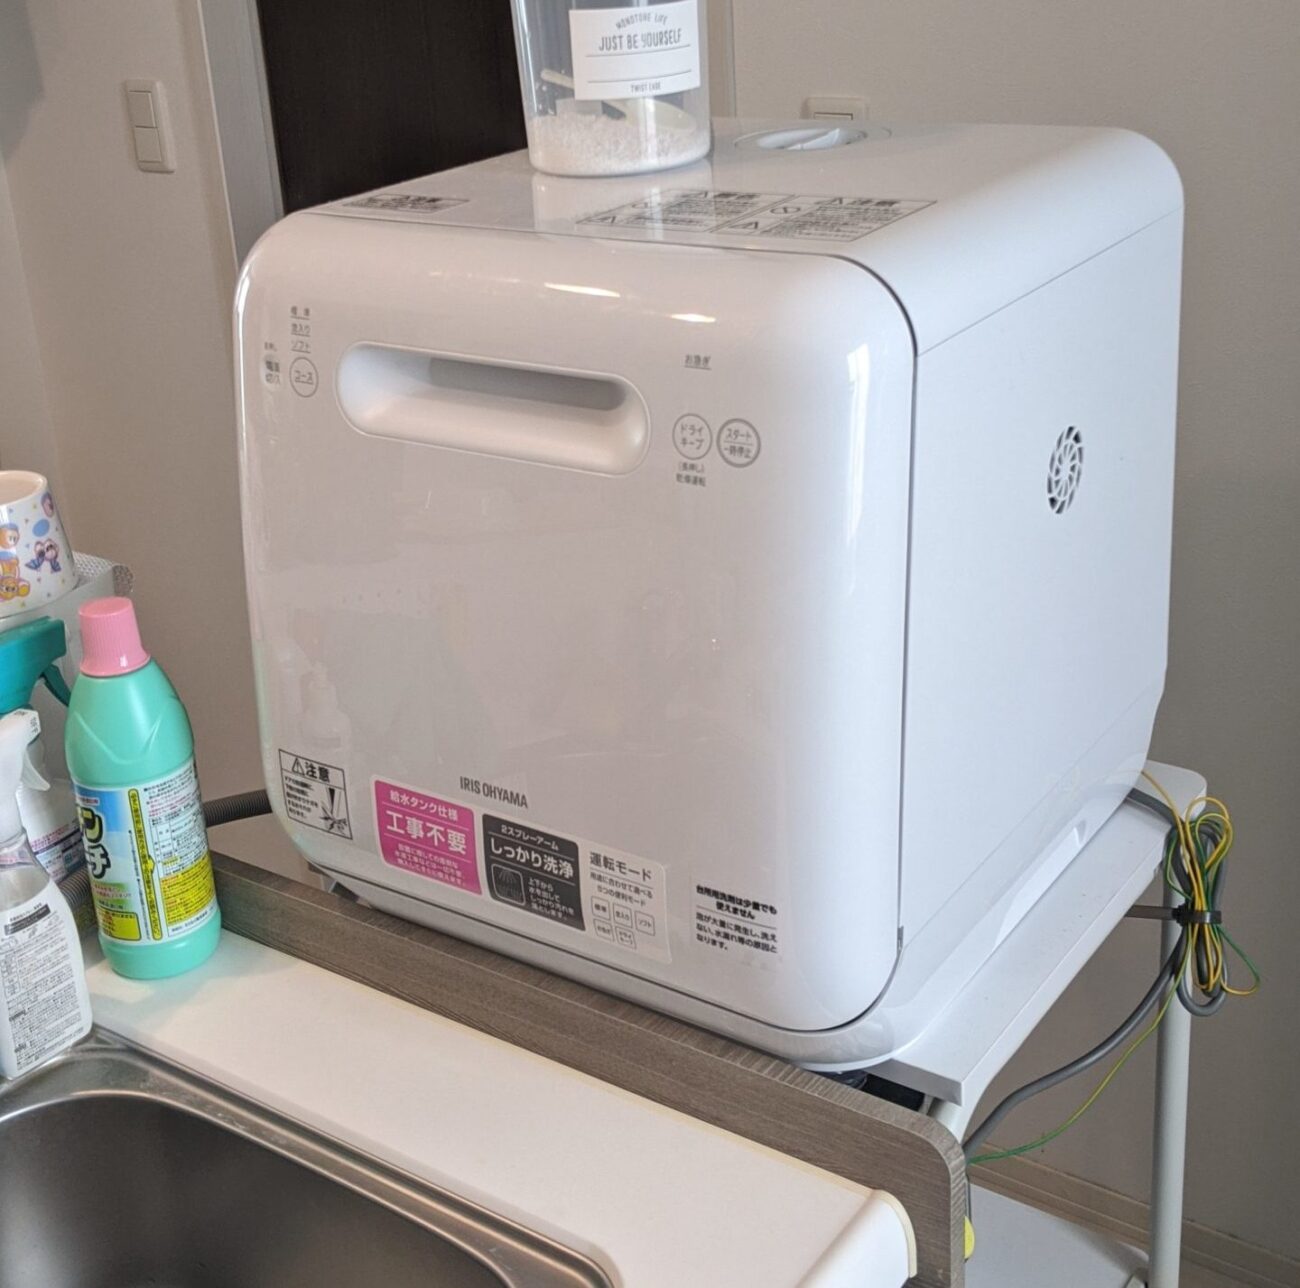 工事不要】アイリスオーヤマの食洗機を9ヵ月間使用した感想【レビュー】 | SHMINATOR